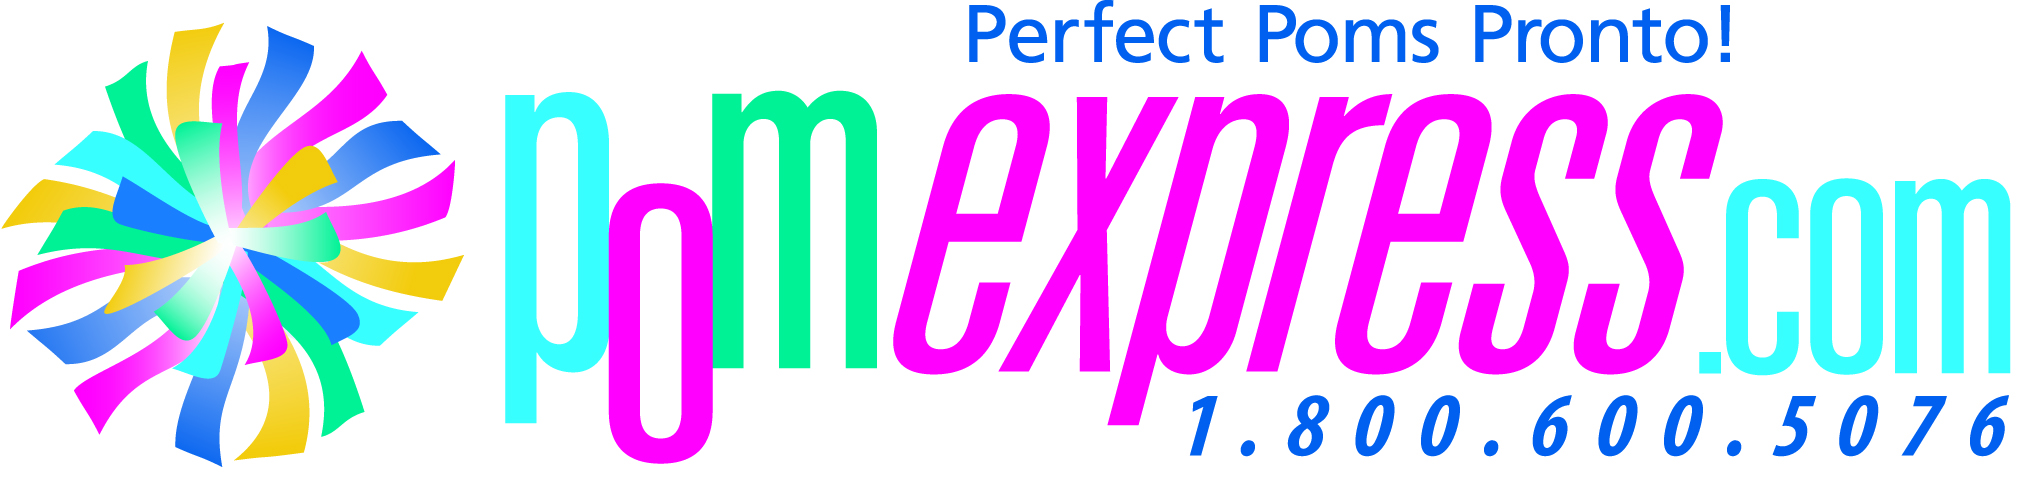 Pom Express - Perfect. Poms. Pronto!